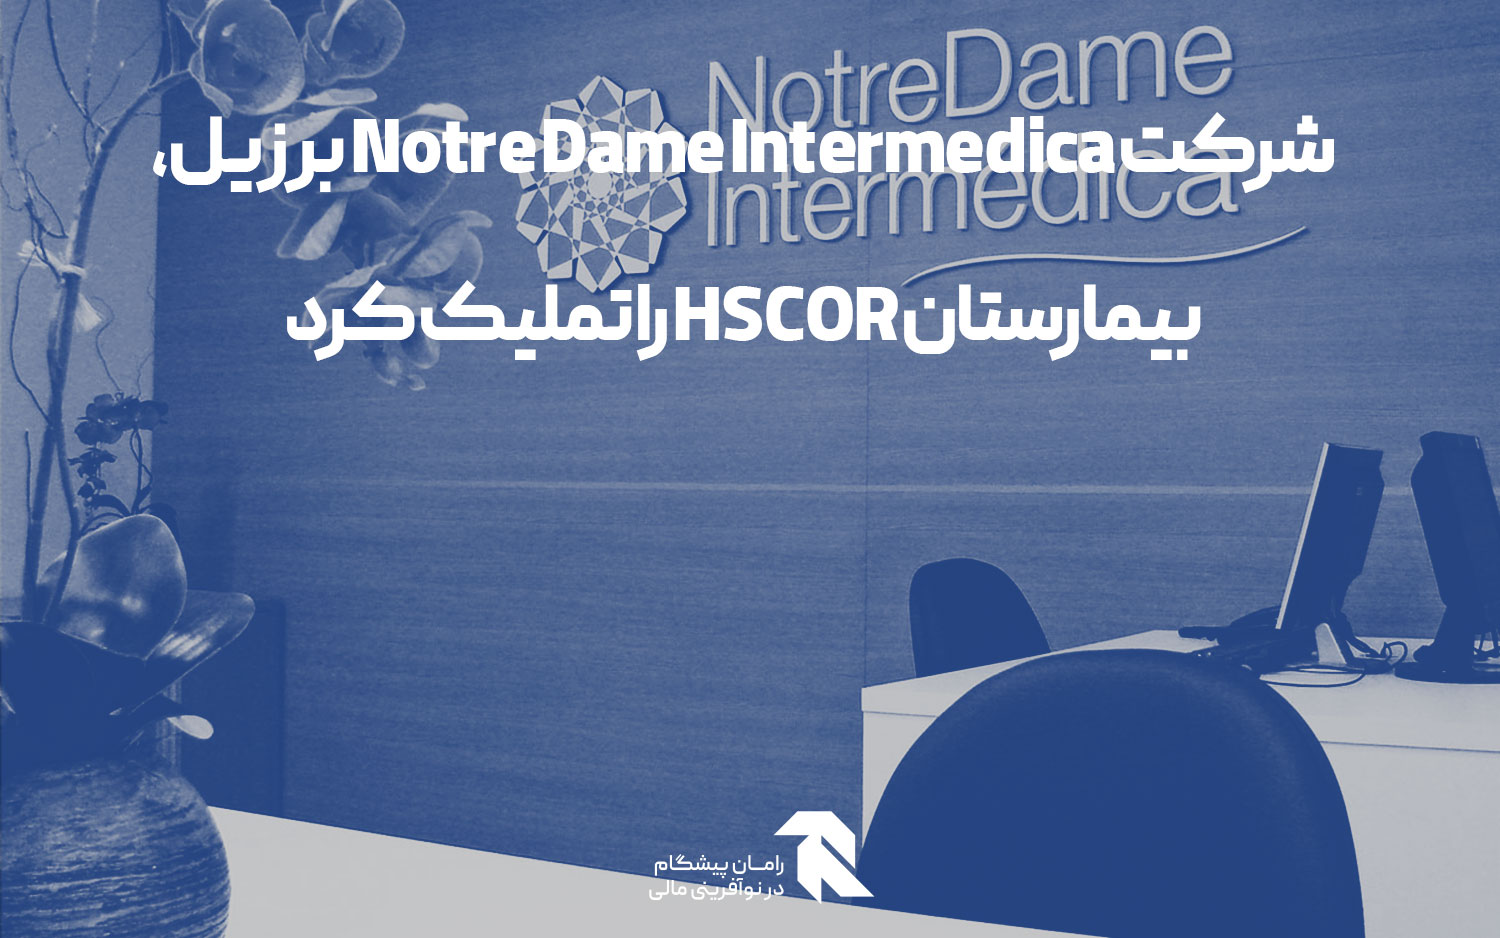 شرکت Notre Dame Intermedica برزیل، بیمارستان HSCOR را تملیک کرد